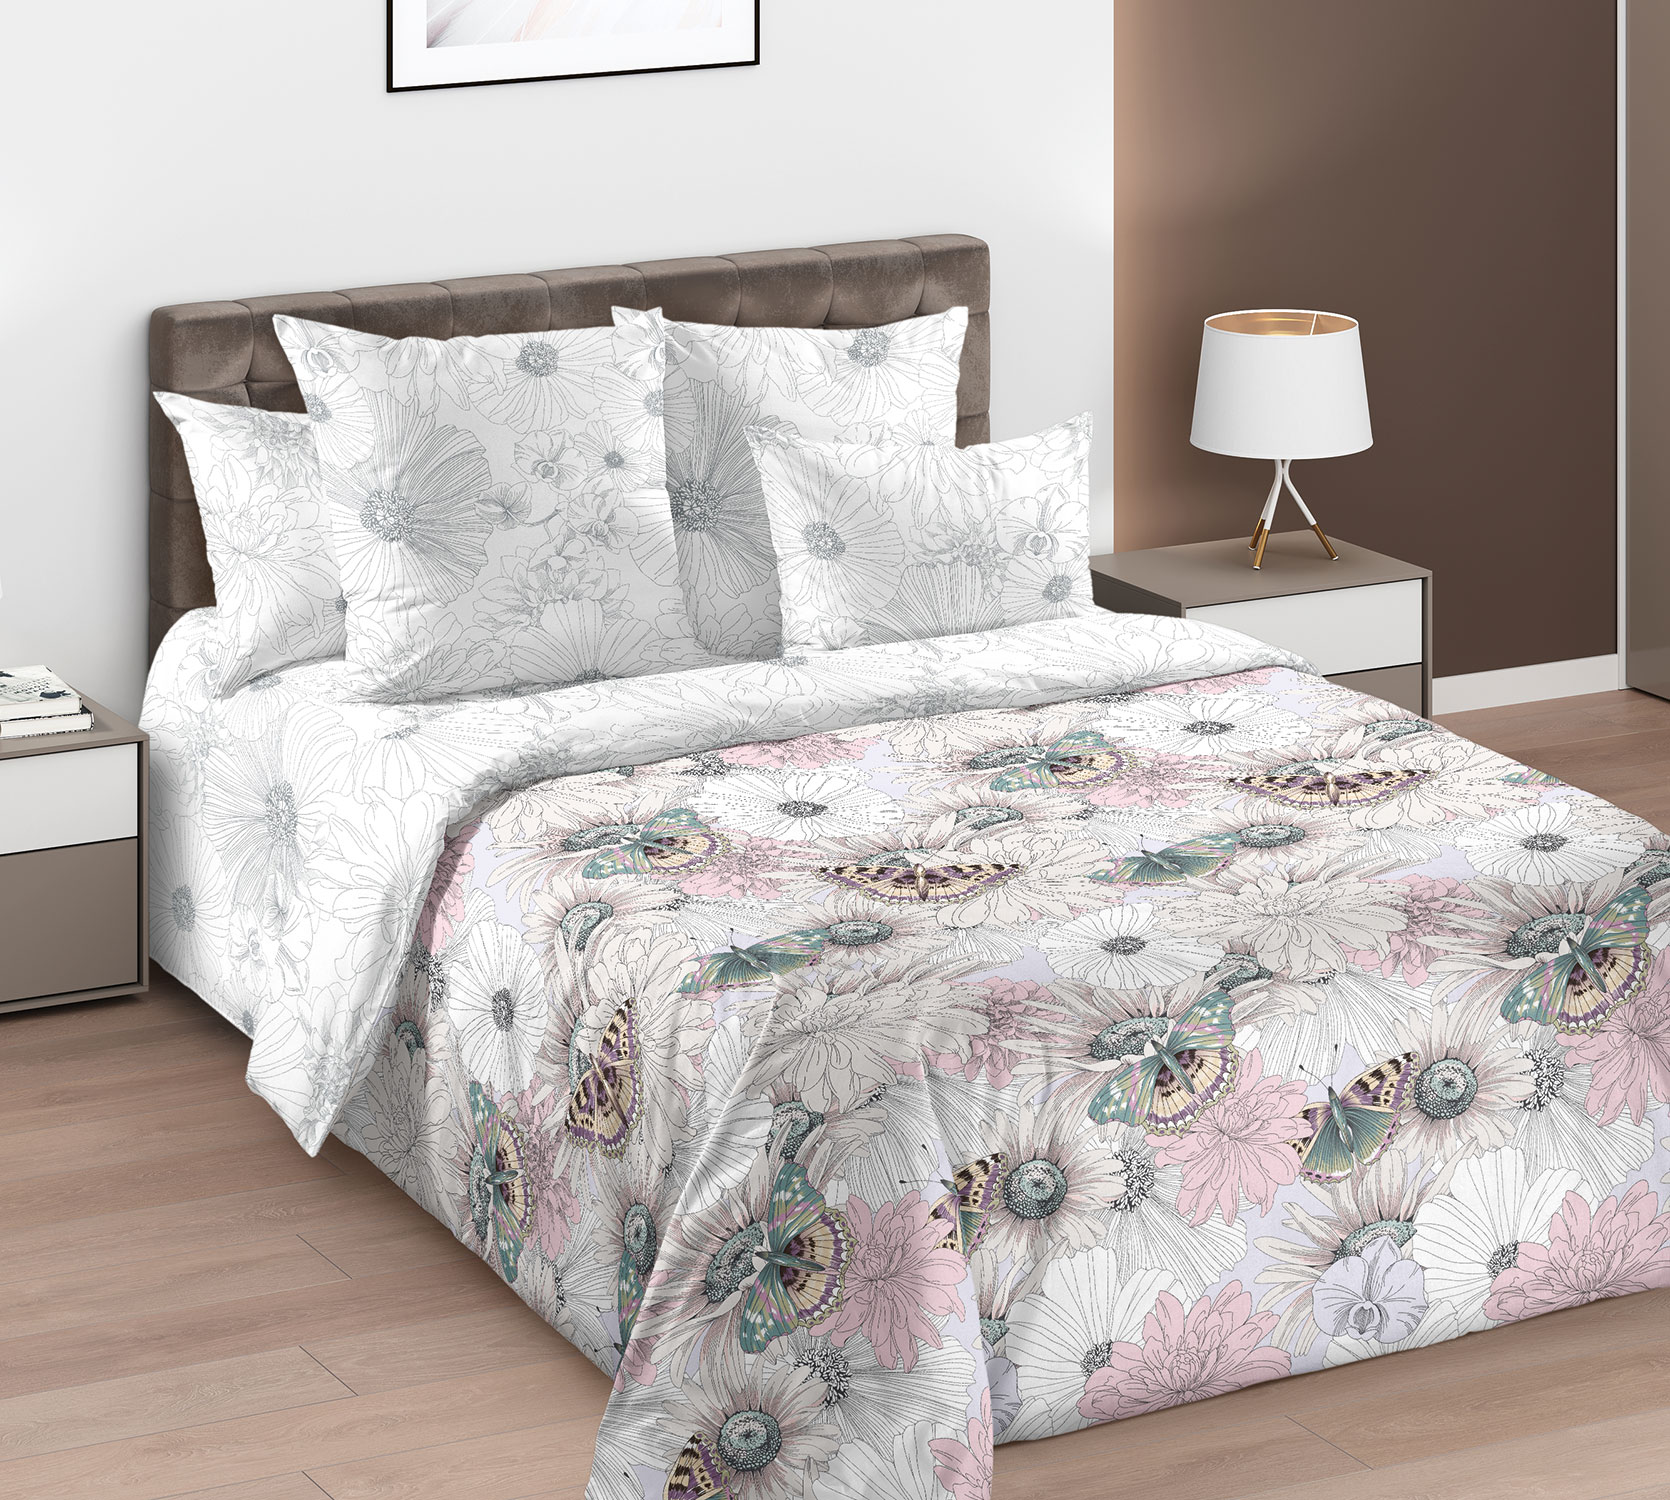 Купить комплект постельного белья Цветочный луг 1,5 спальный 2*50x70, цены в интернет-магазине на Мегамаркет | 600012749972